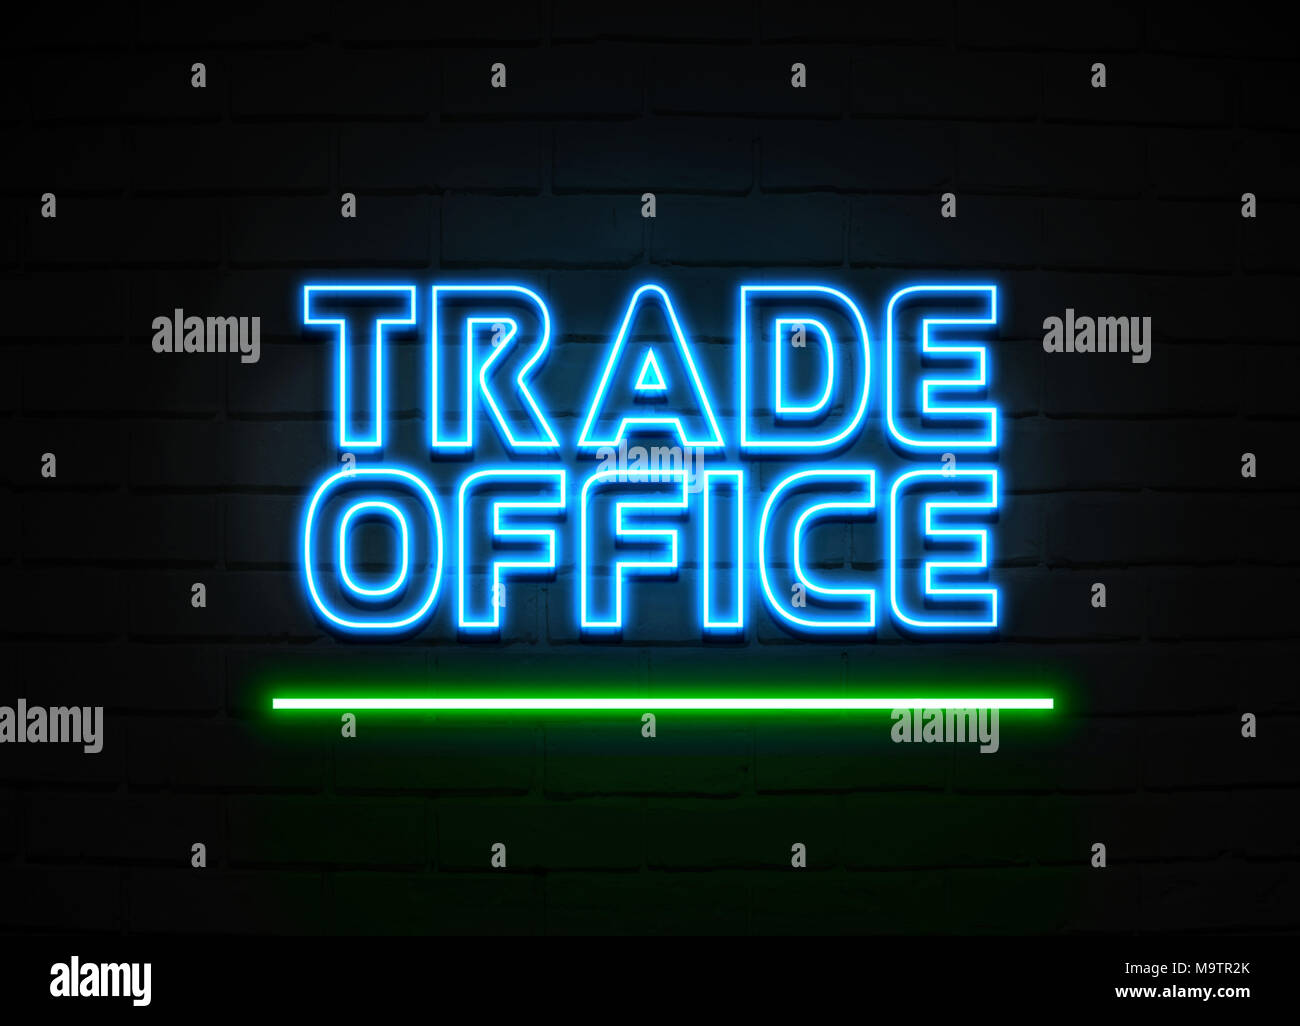 Bureau du commerce en néon - Glowing Neon Sign sur mur brickwall - rendu 3D illustration libres de droits. Banque D'Images